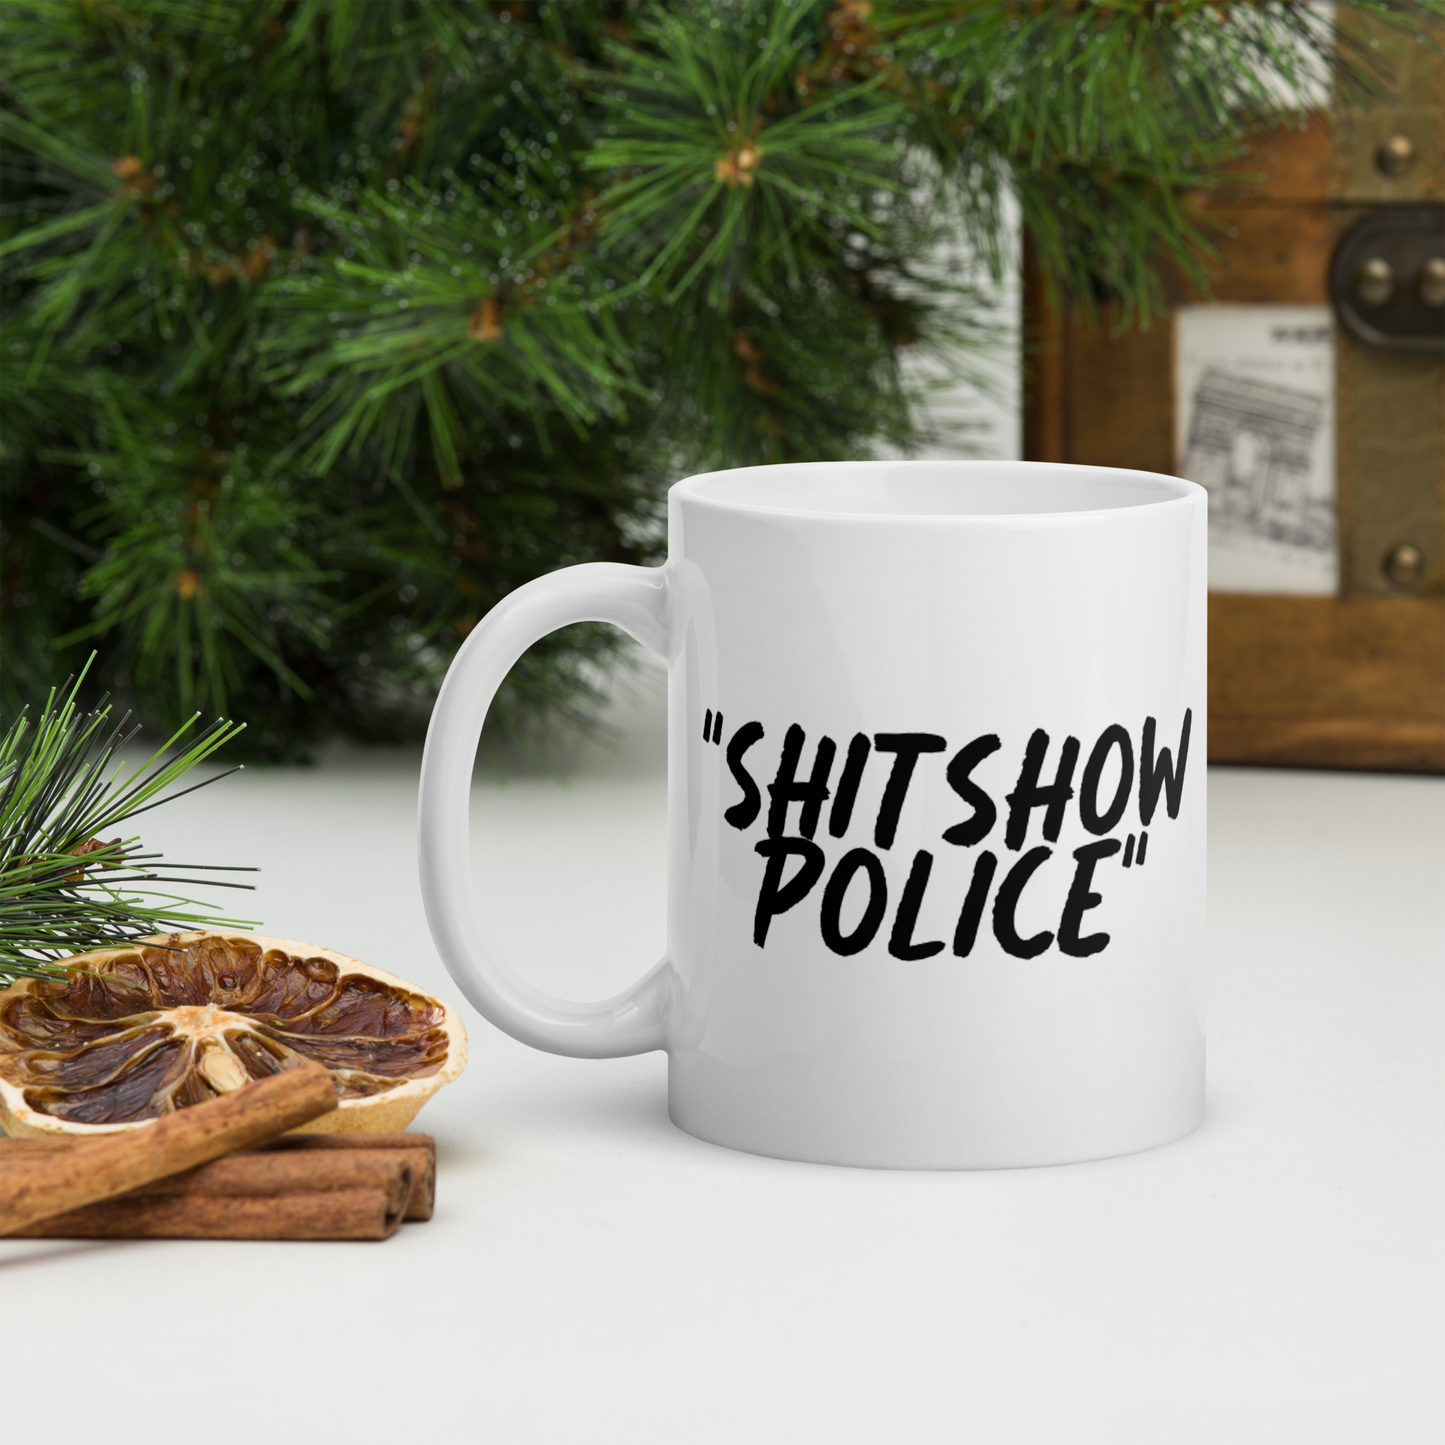 Show Police White Mug